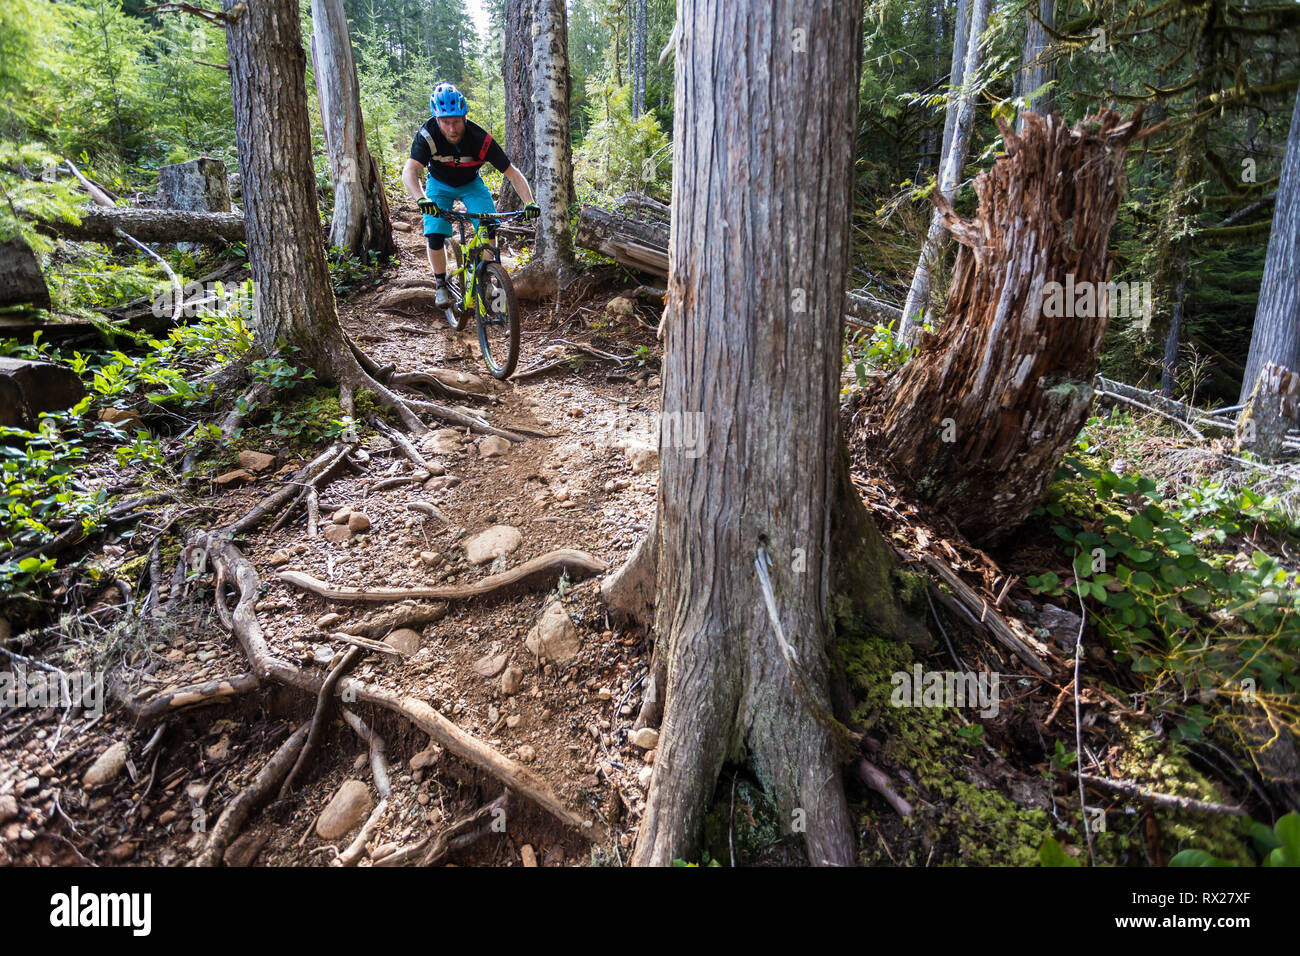 Cumberland's 'Off Broadway' ein steiler Single Track Mountainbike Trail ist in der Regel für fortgeschrittene Mountainbiker reserviert, Cumberland, das Comox Valley, Vancouver Island, British Columbia, Kanada. Stockfoto